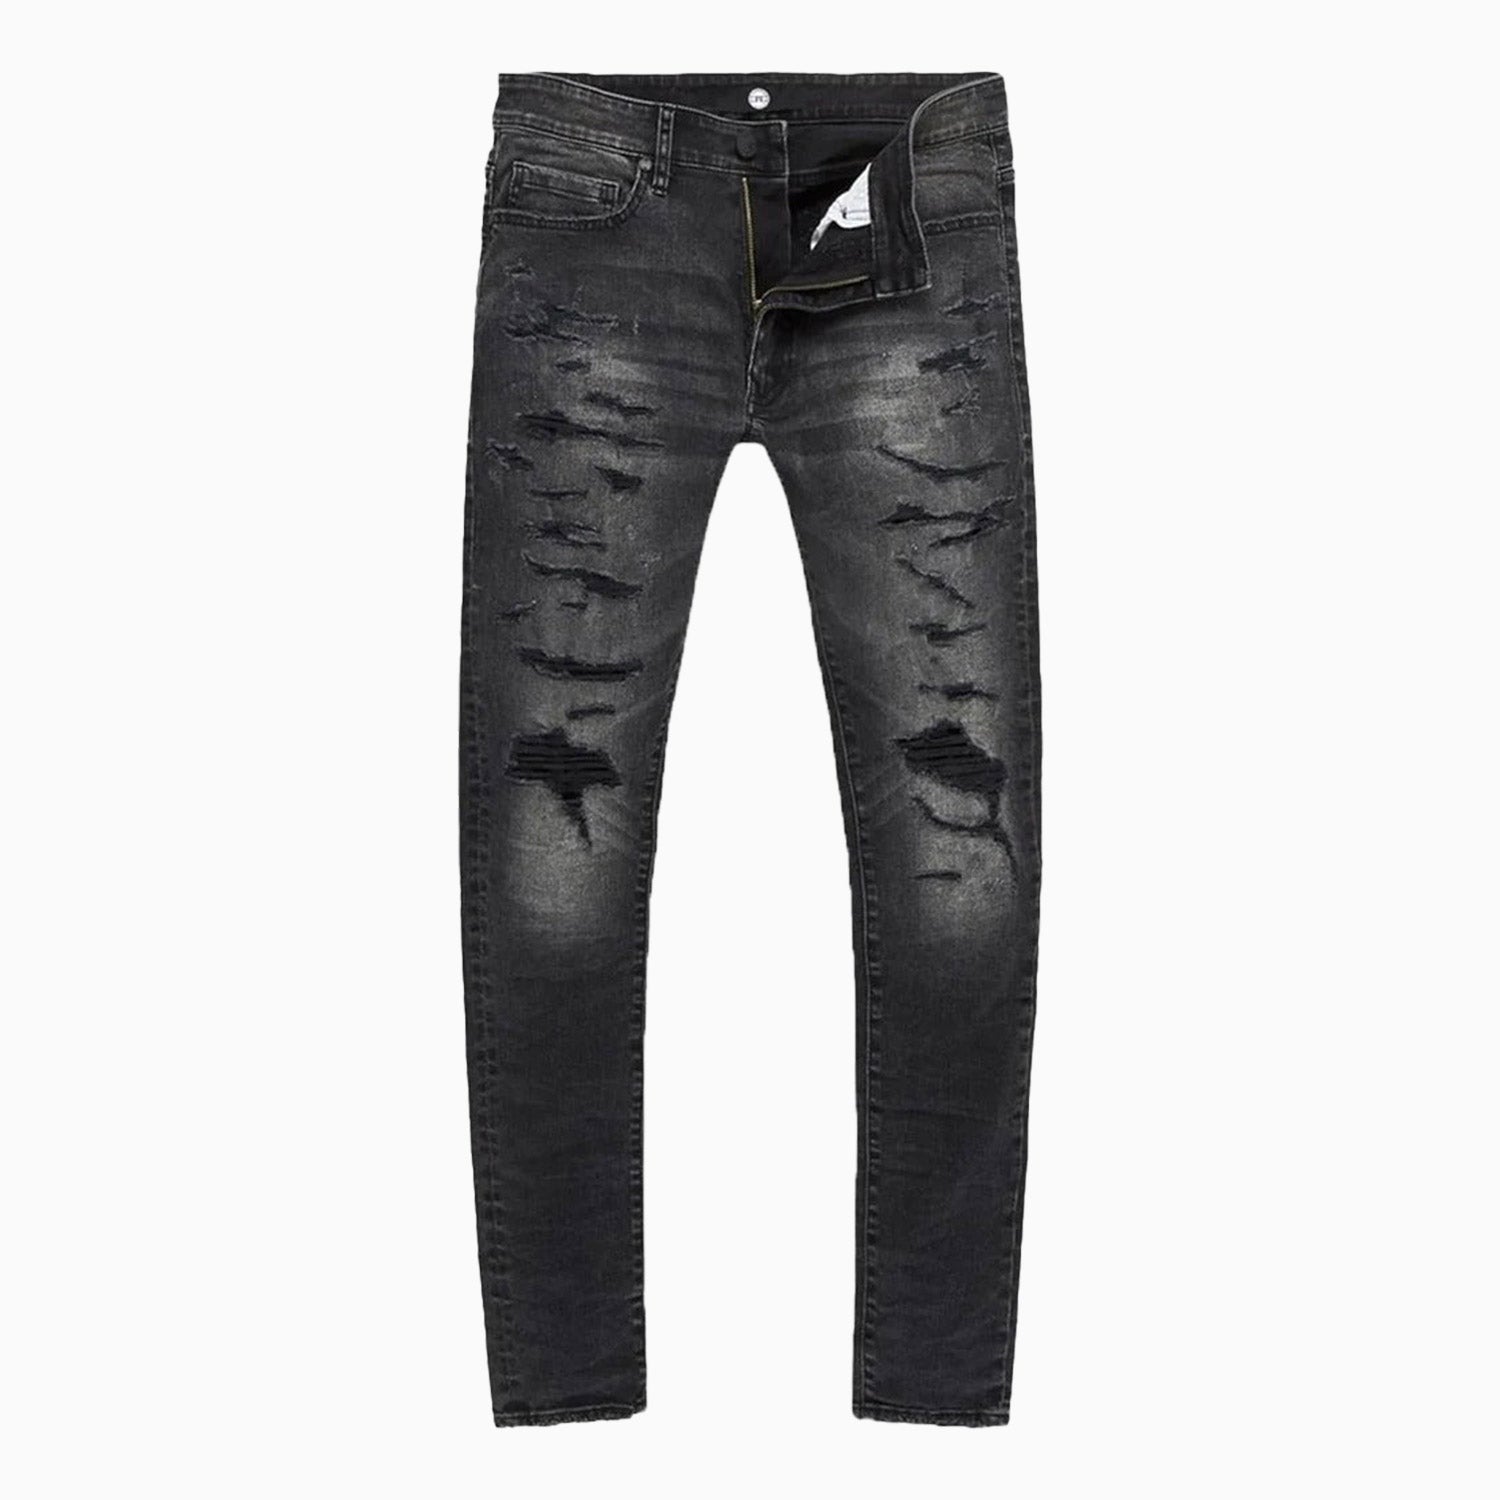 jordan-craig-mens-crinkled-denim-jeans-with-shreds-jt3493-bs